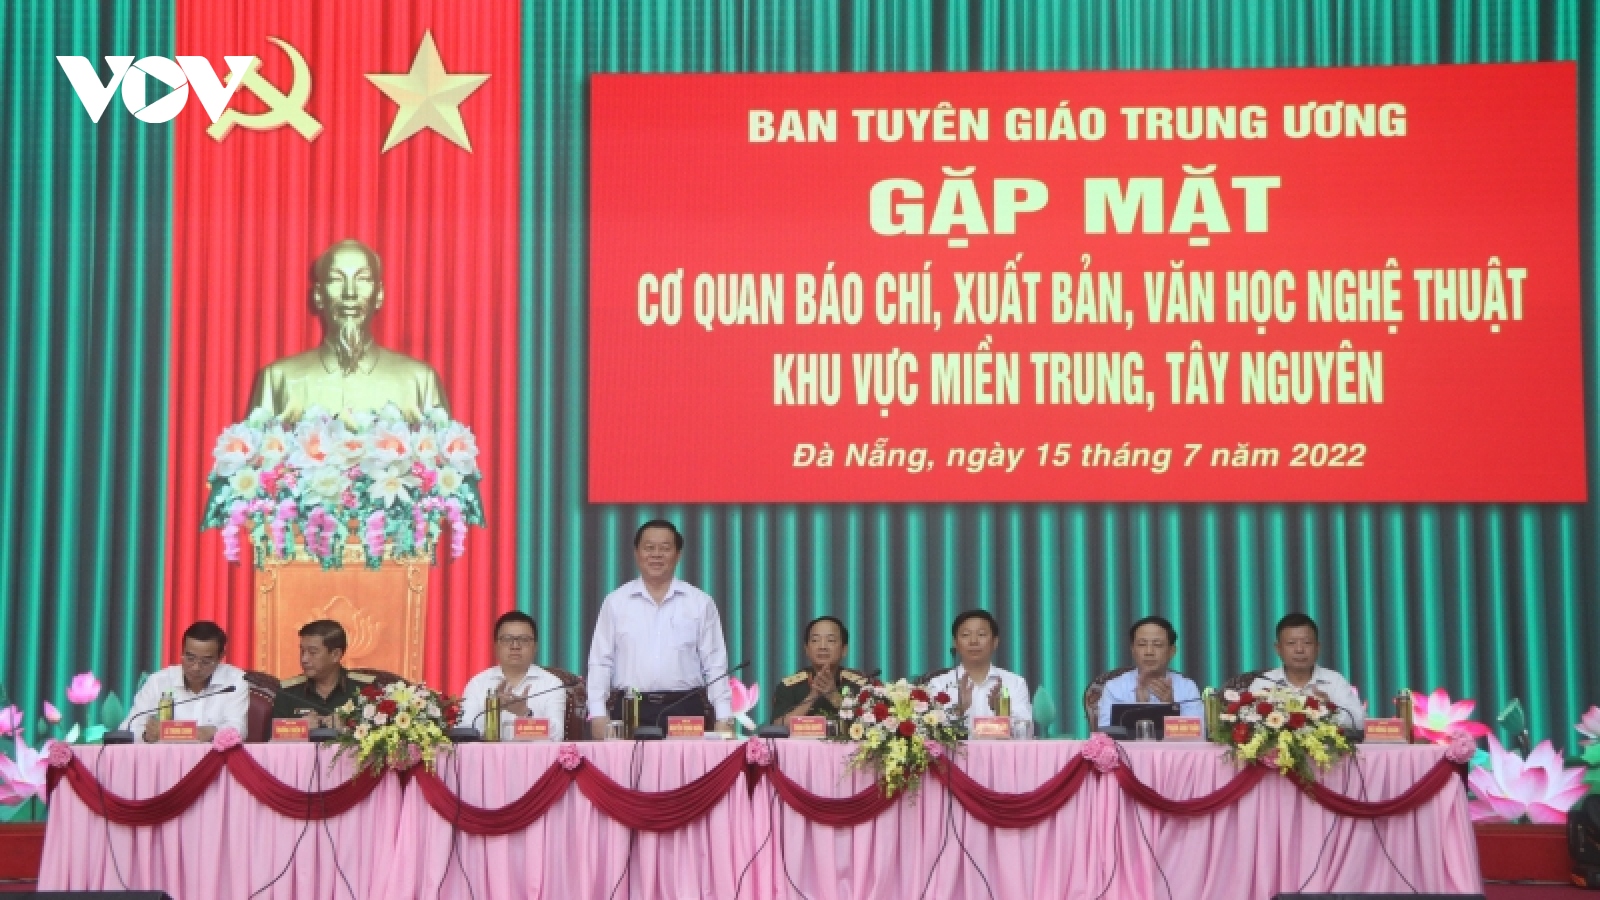 Ông Nguyễn Trọng Nghĩa gặp mặt cơ quan báo chí, VHNT miền Trung, Tây Nguyên